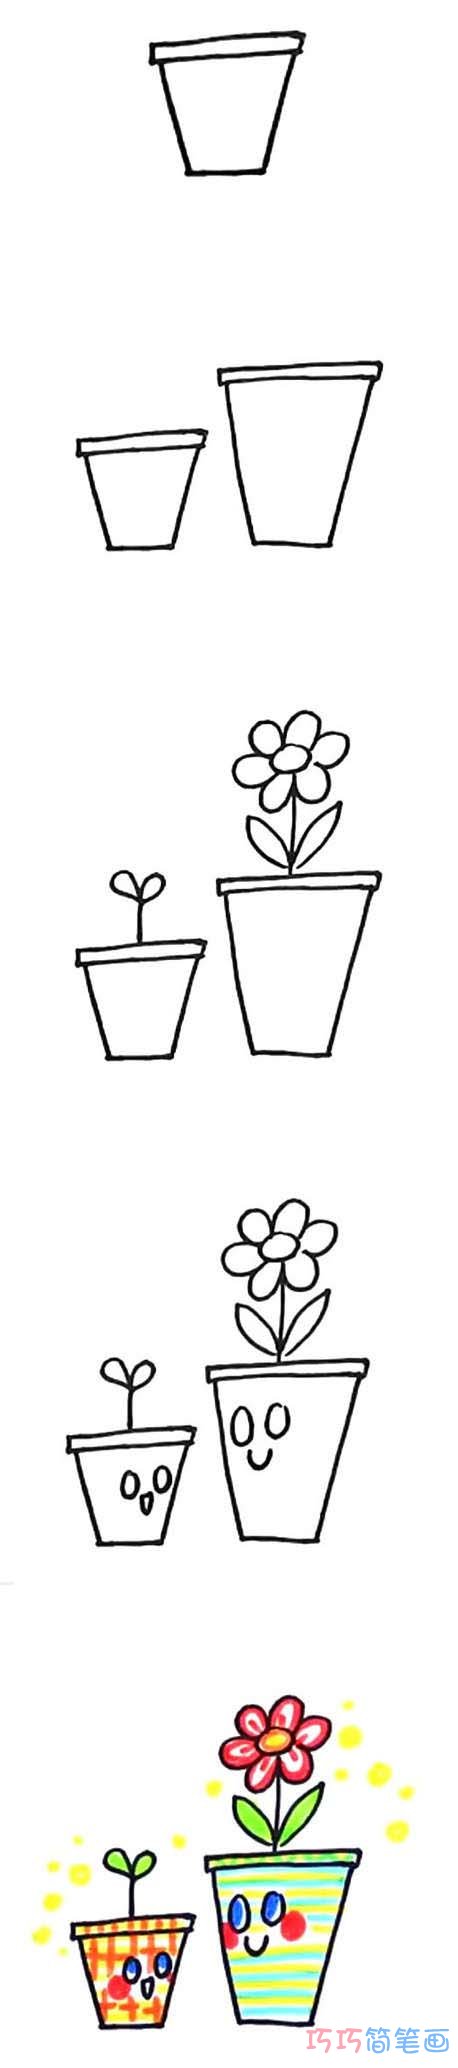 1分钟简笔画两盆小花的画法详细步骤简单好看